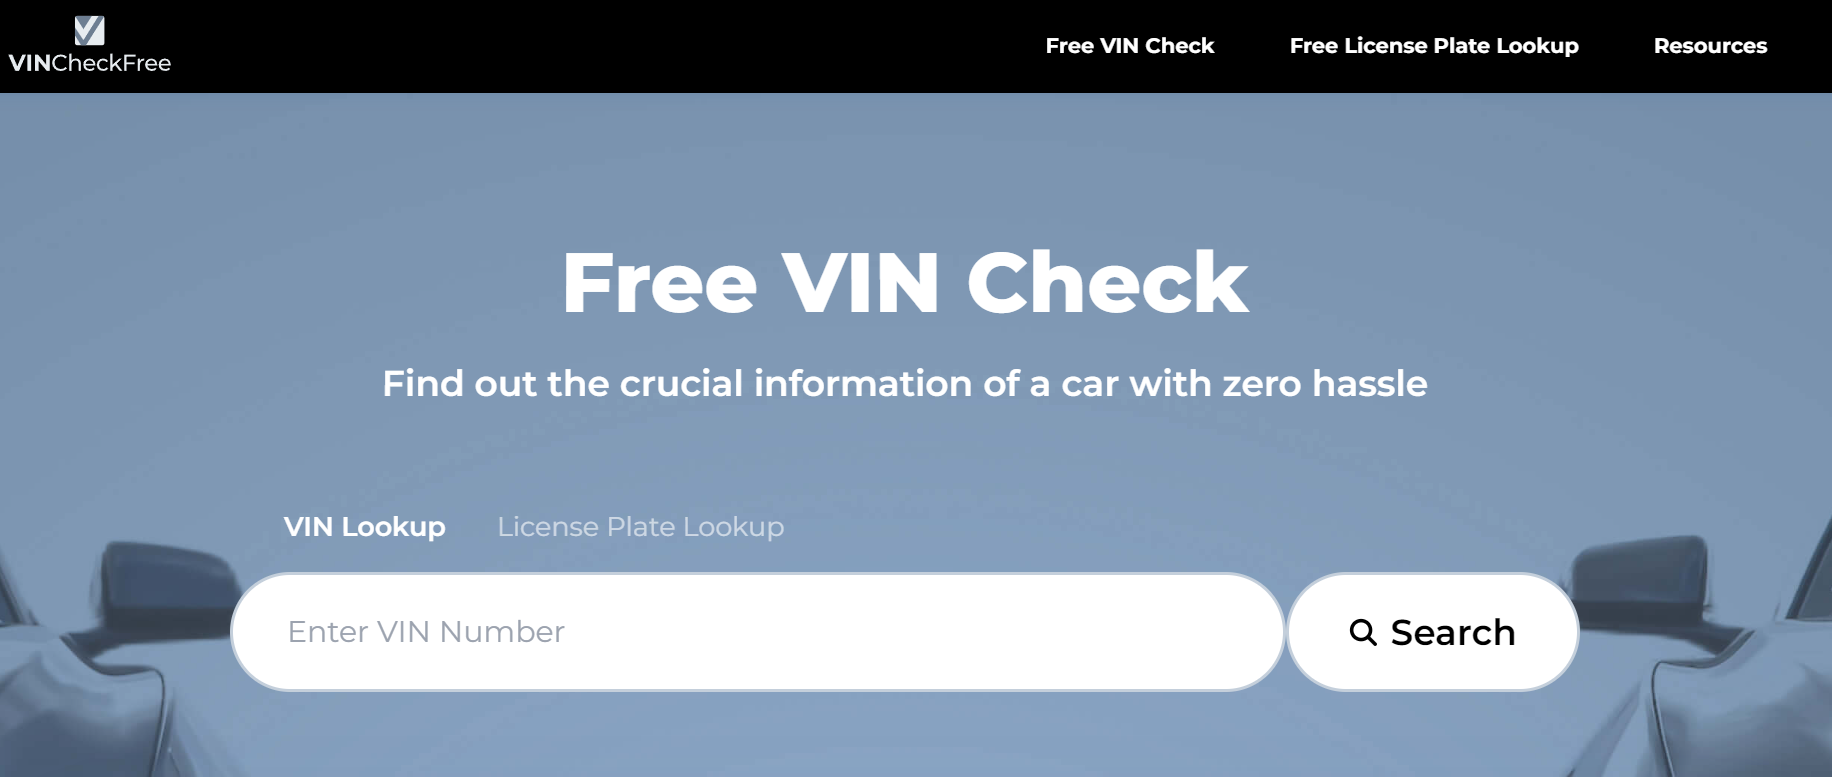 VIN Check Free